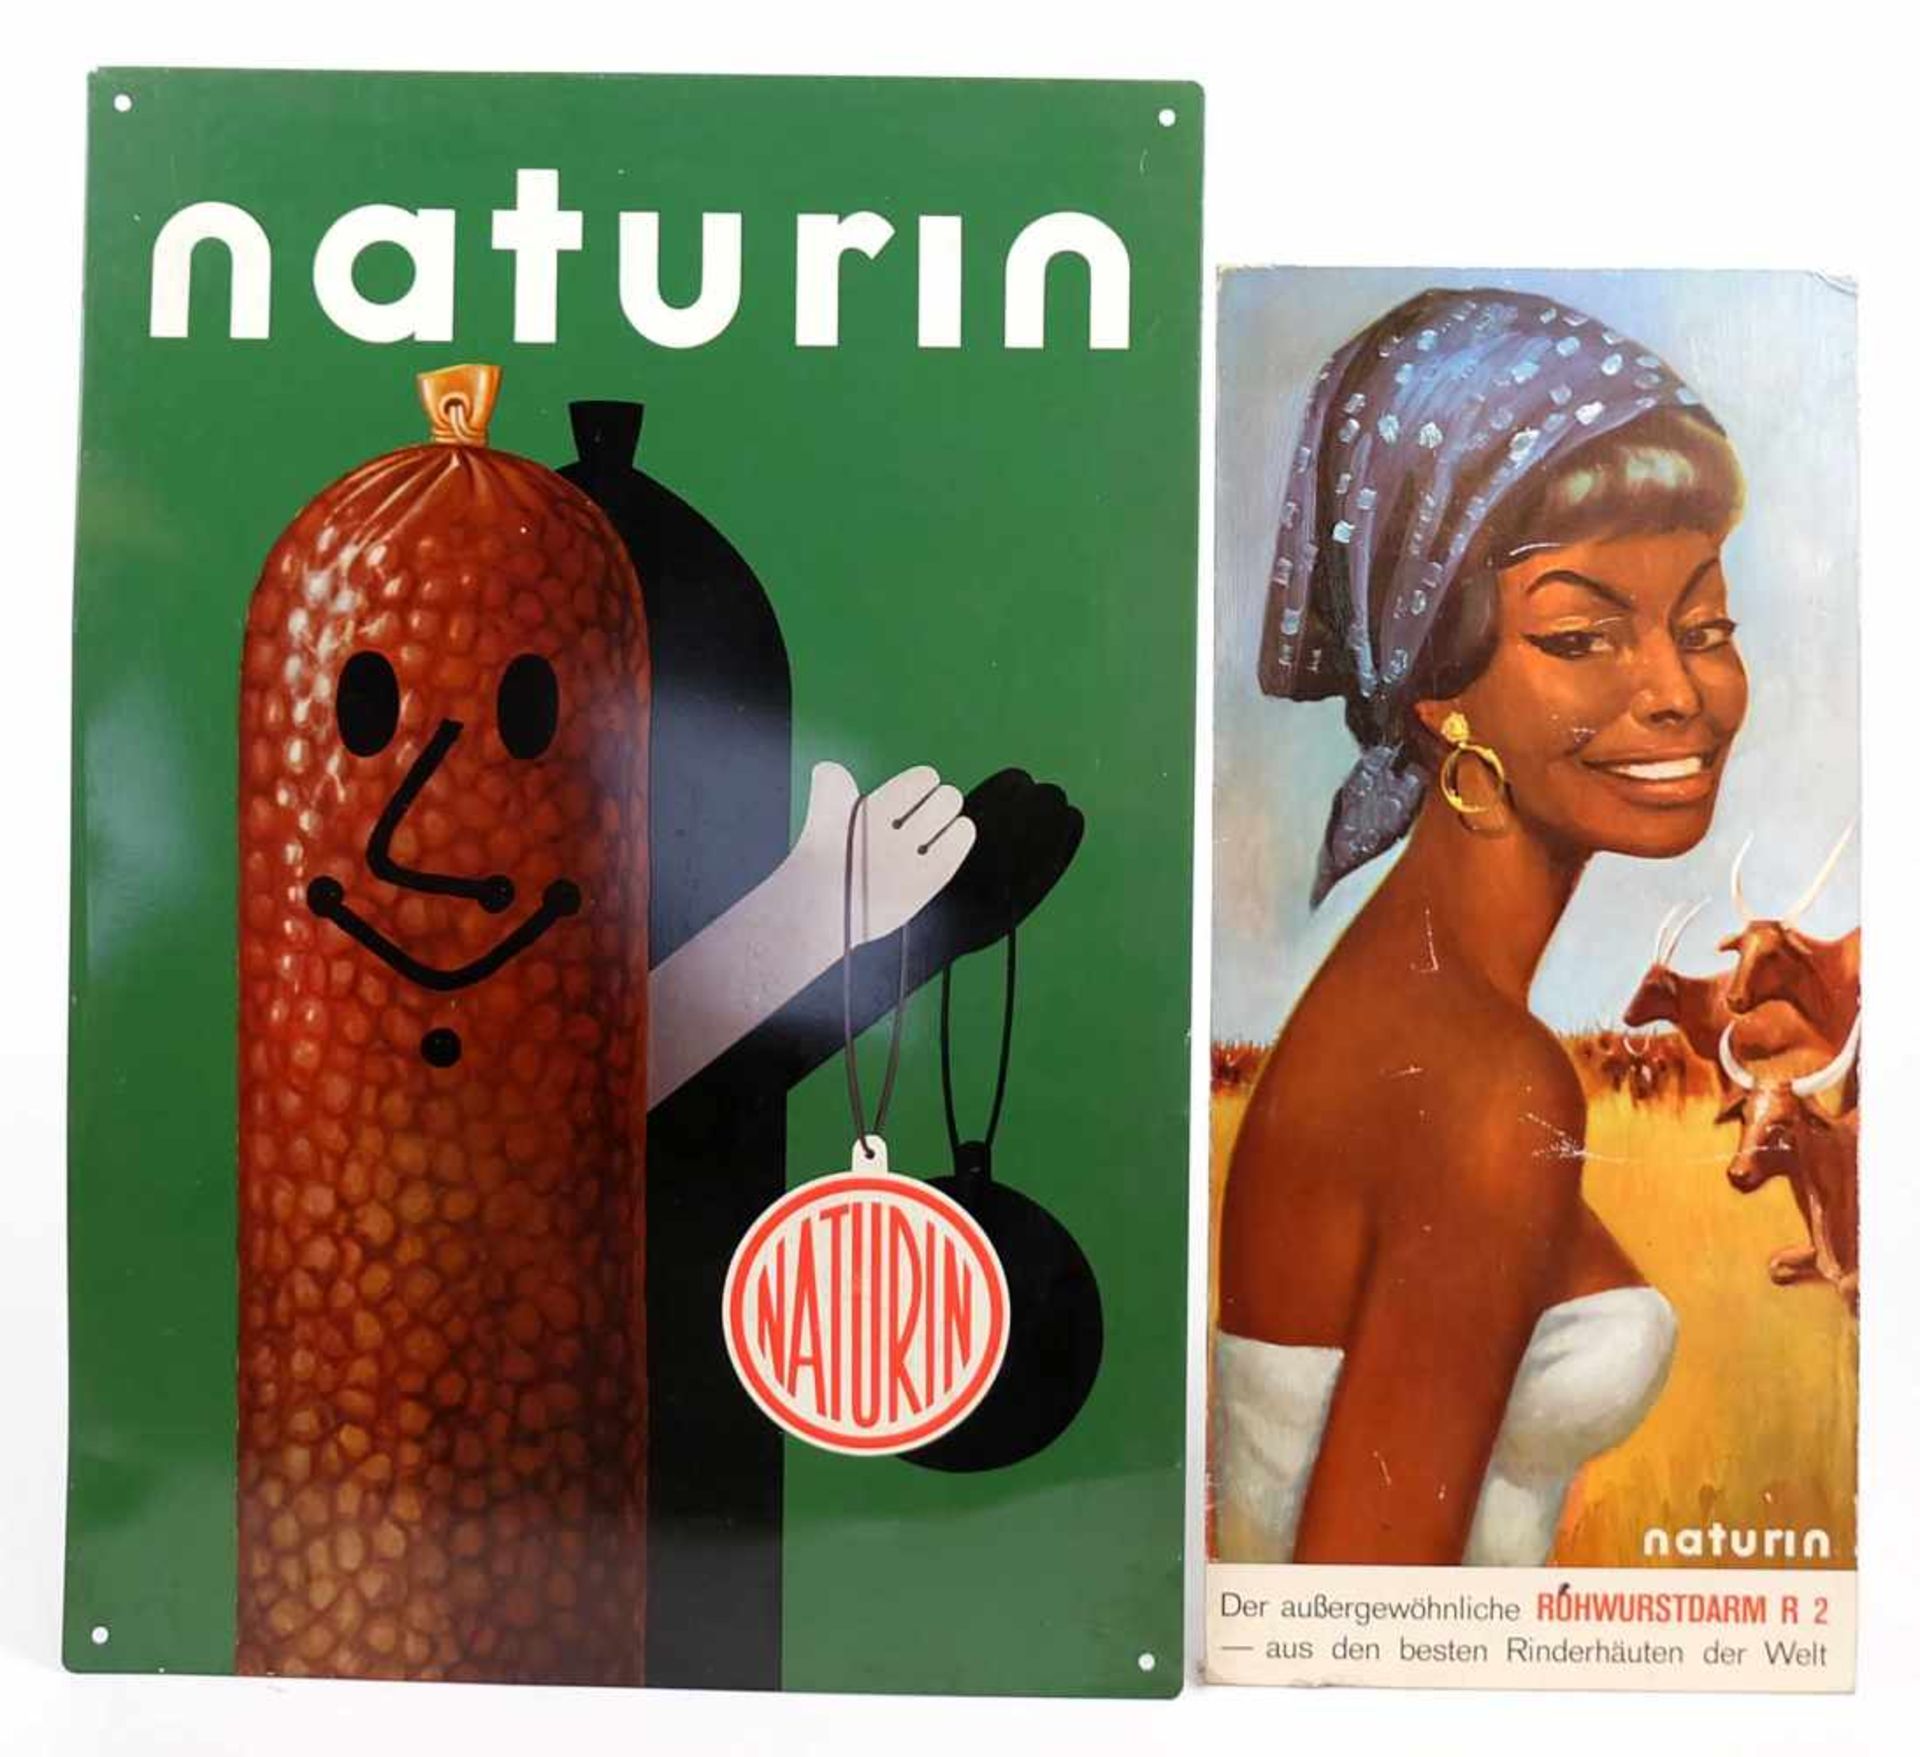 WERBESCHILD/ PAPPAUFSTELLER, Naturin, 1950er/60er-Jahre, Blech, polychrom, winkende Wurst, ca. 54